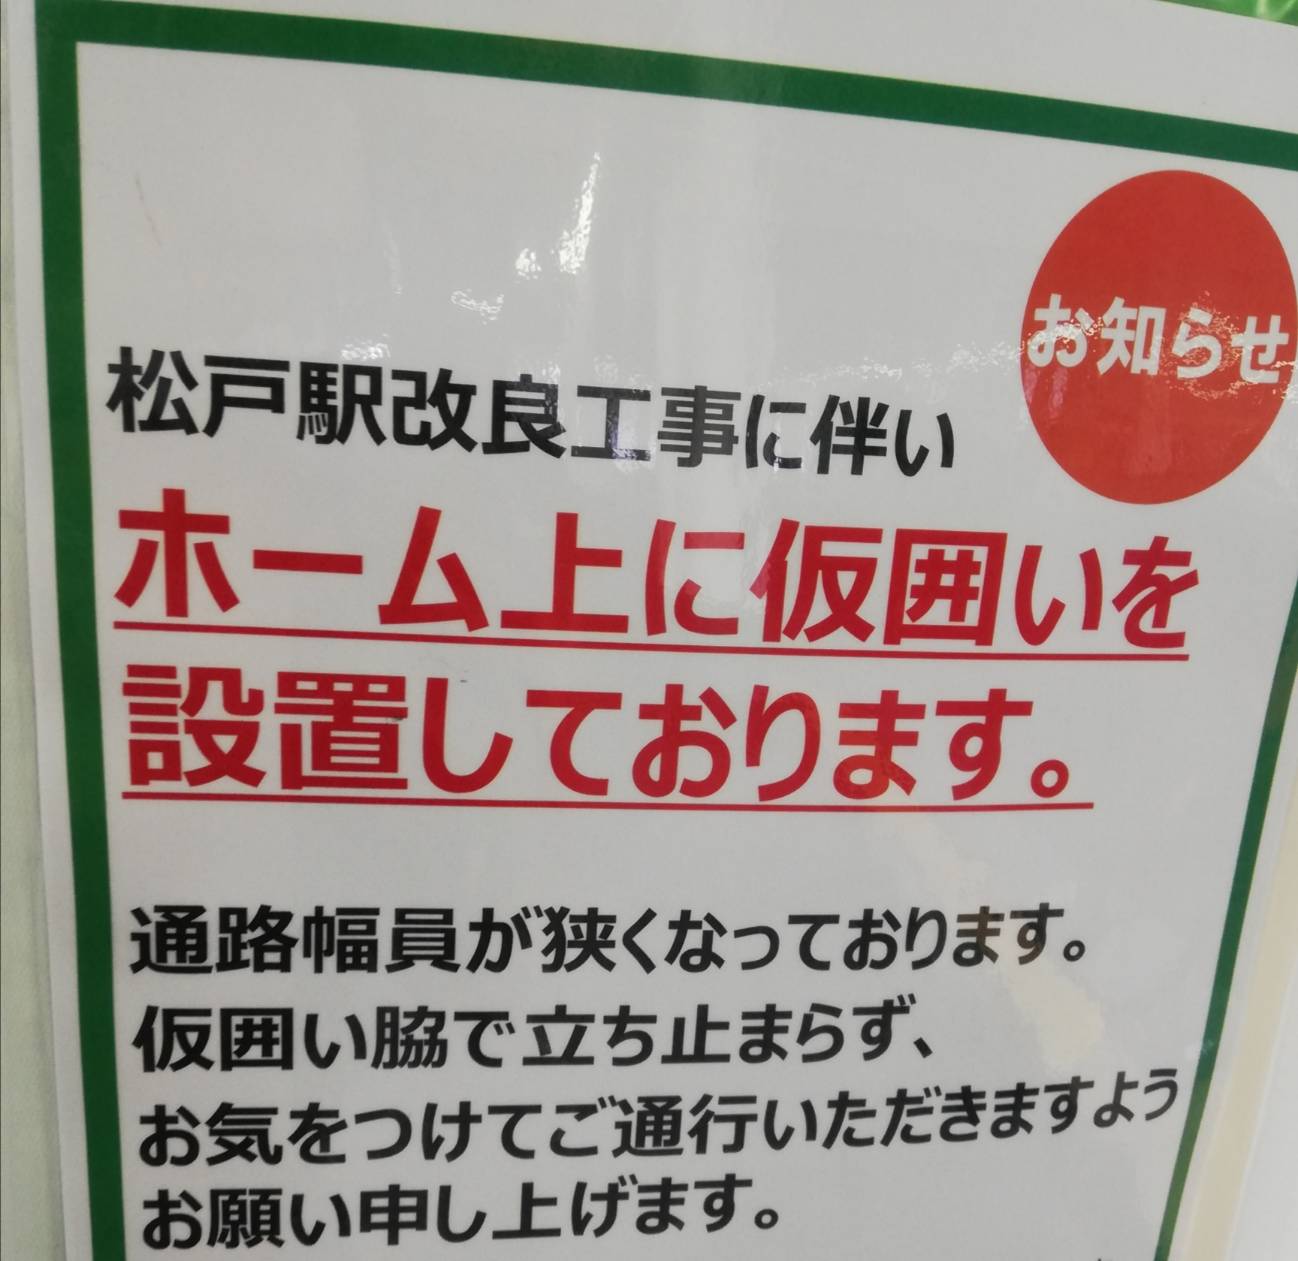 松戸駅リニューアル工事松戸新駅ビル